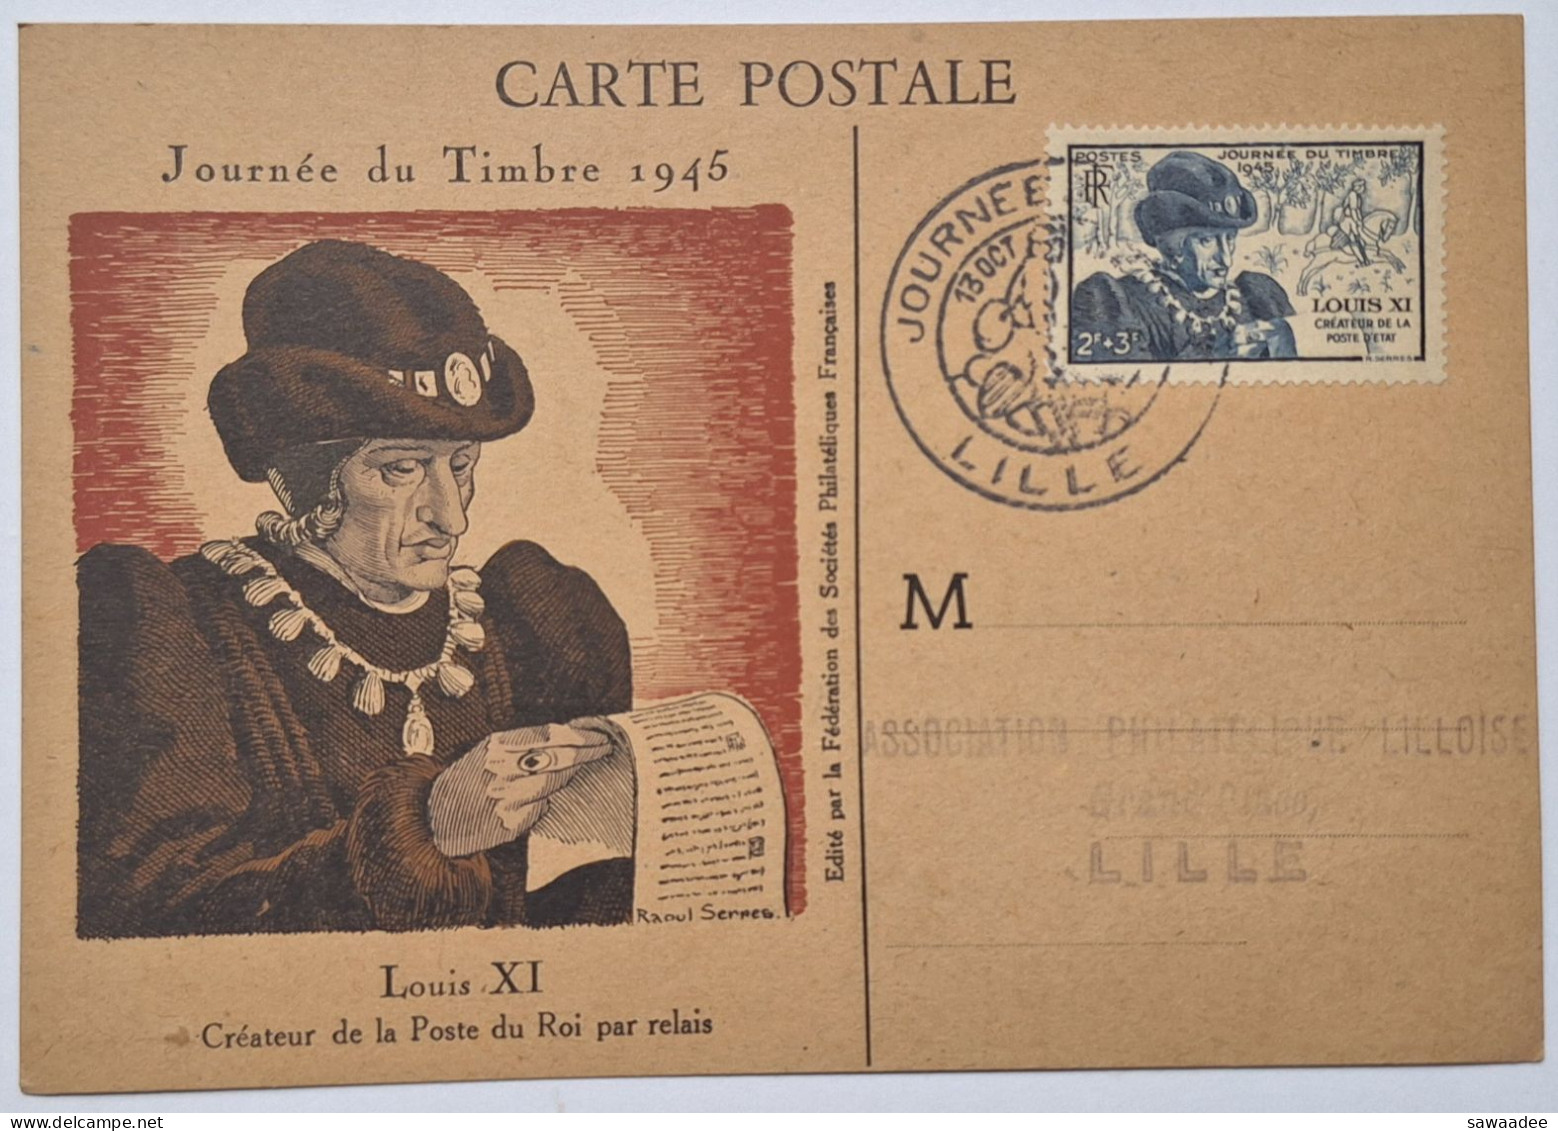 CARTE POSTALE FRANCE - JOURNEE DU TIMBRE 1946 LILLE - LOUIS XI CREATEUR DE LA POSTE DU ROI PAR RELAIS - Poste & Facteurs